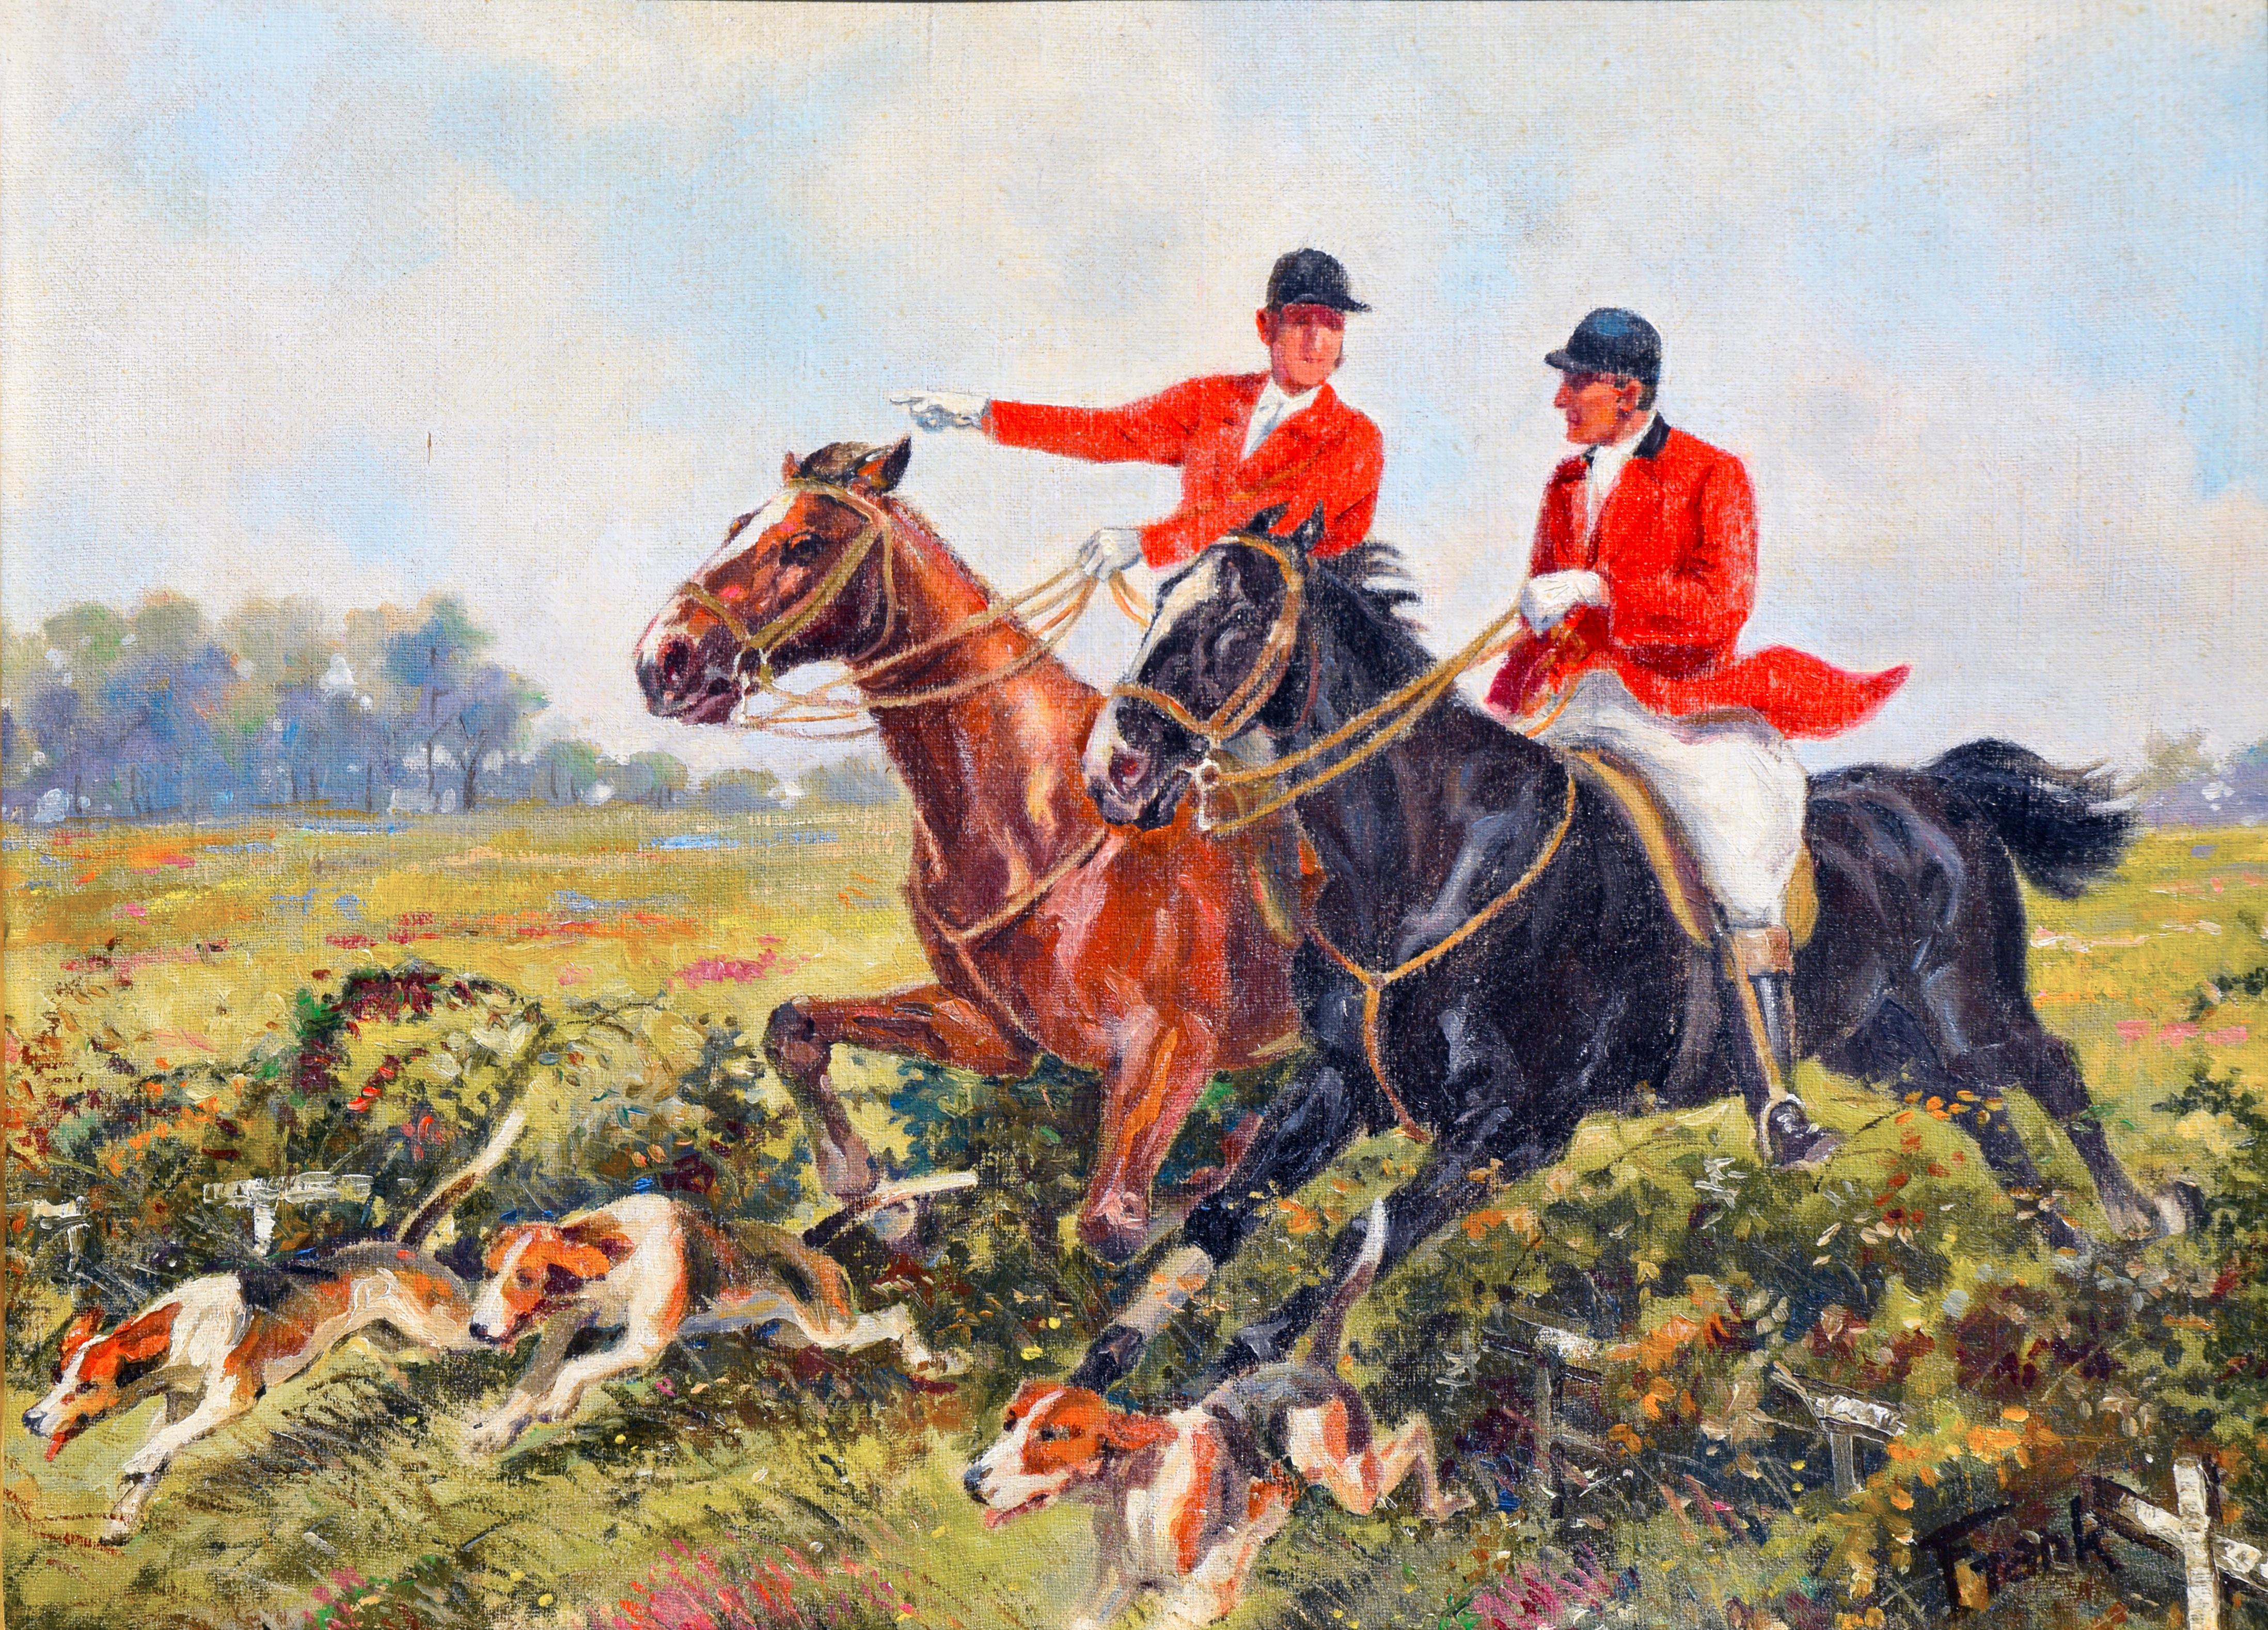 The Hunt w/ Friends by Frank Stick (Amerikanischer Impressionismus), Painting, von Frank Leonard Stick